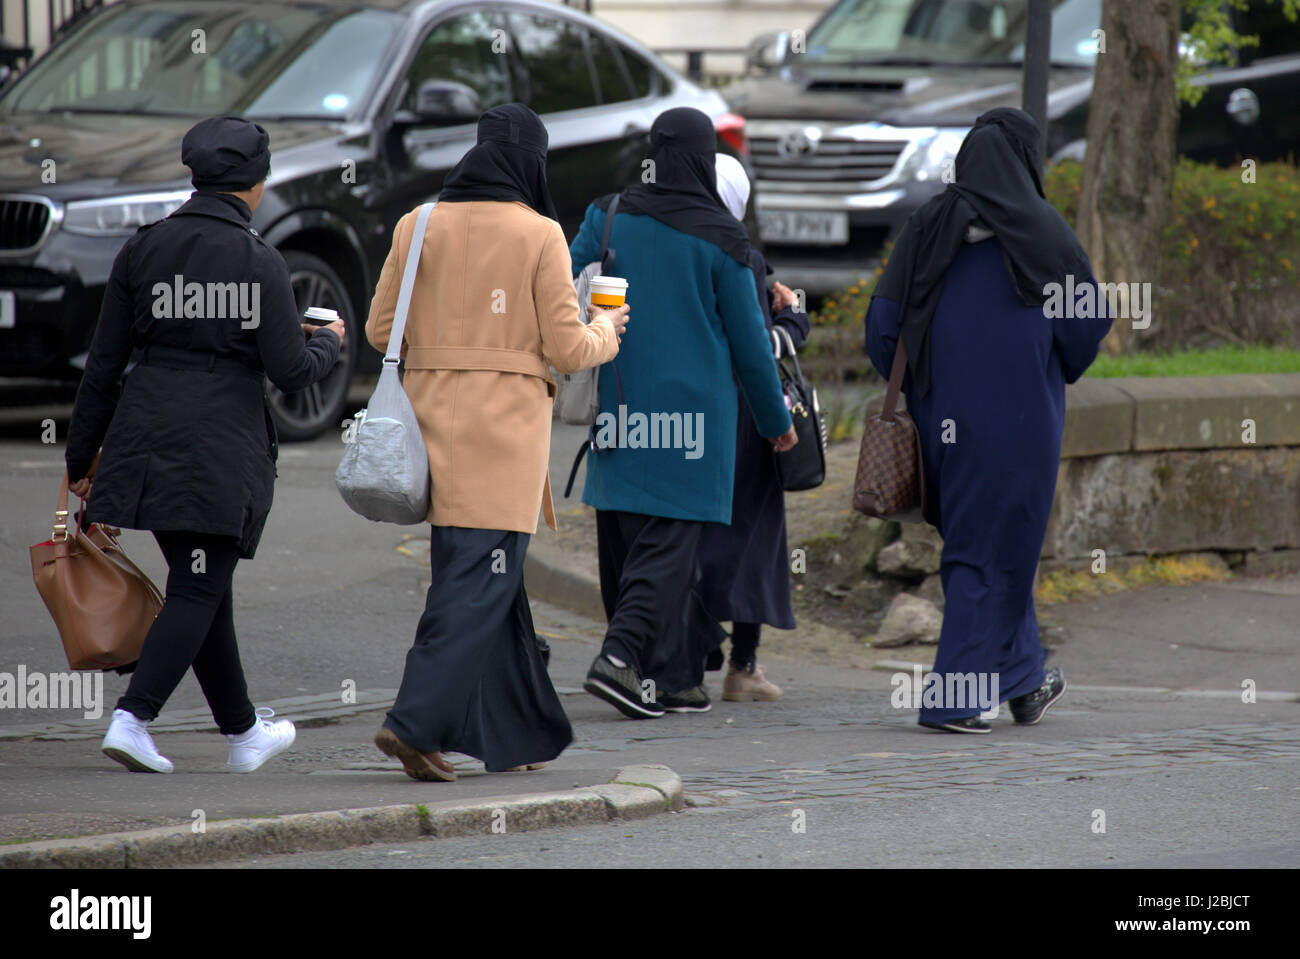 Asiatischen afrikanischen Flüchtlings gekleidet Burka Hijab Schal auf der Straße in die UK alltägliche Szene fünf junge Mädchen zu Fuß in Menge Kaffee trinken Stockfoto